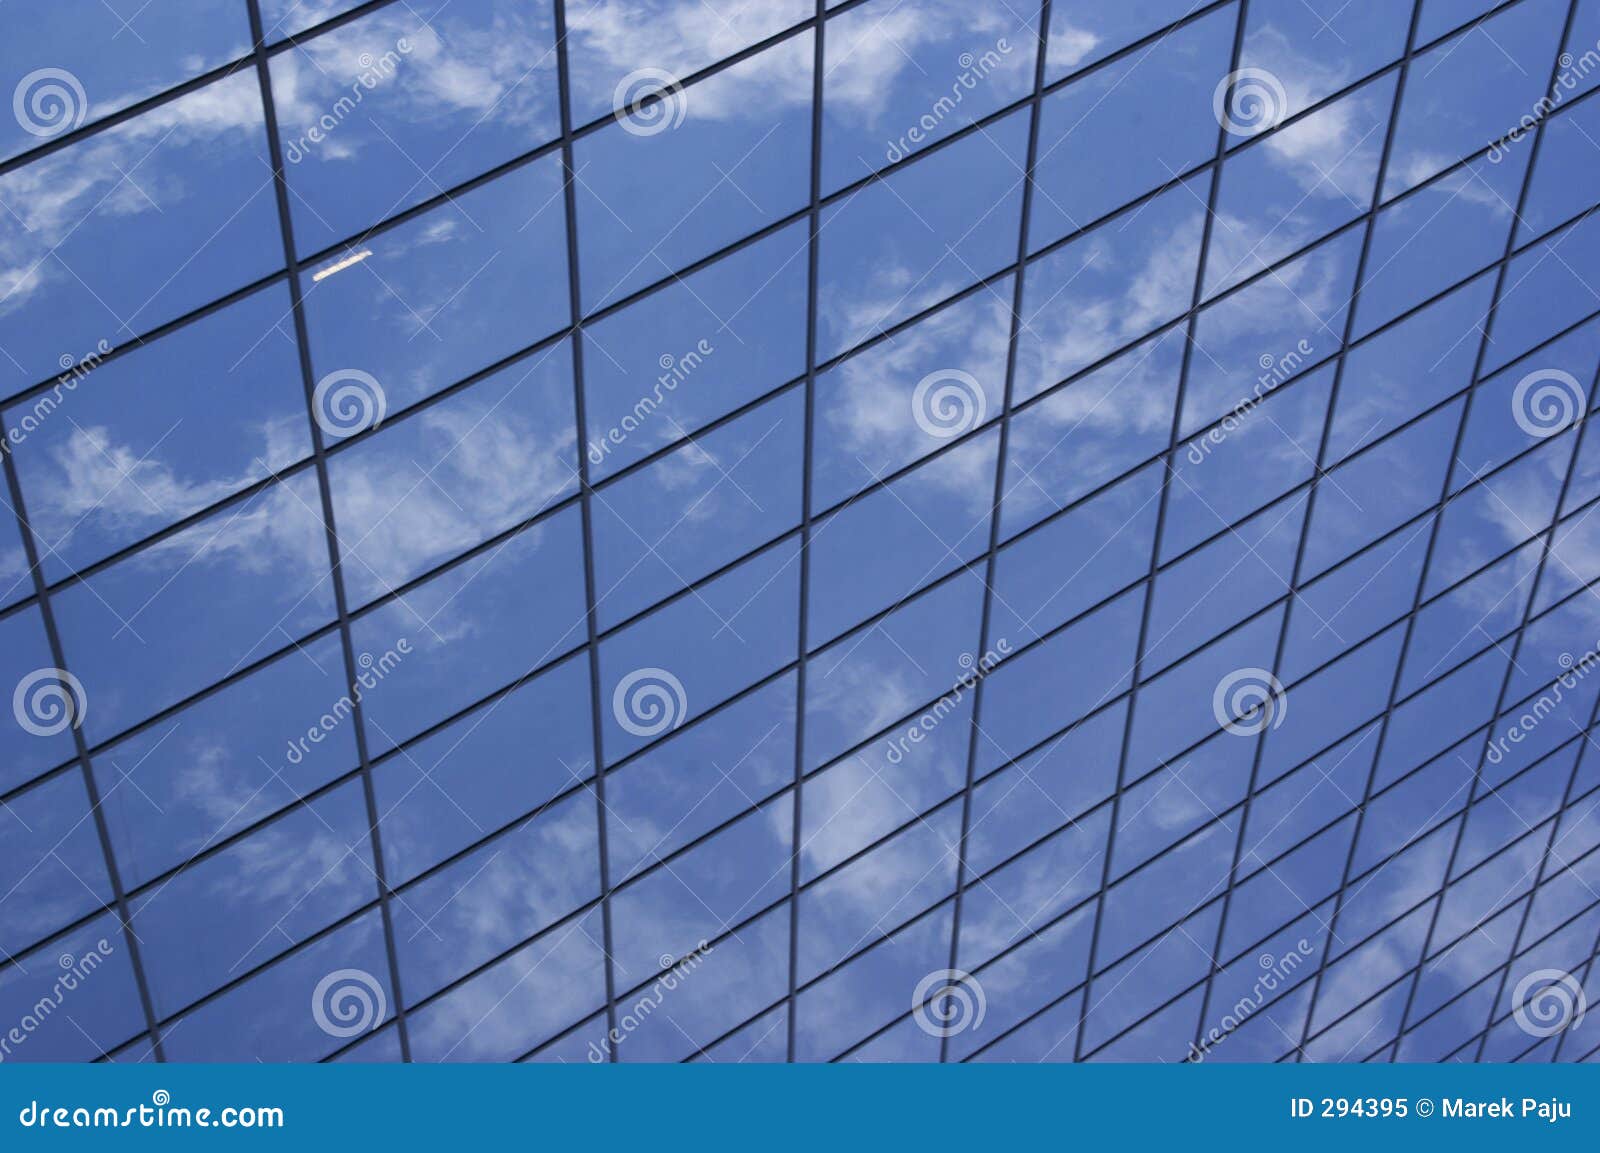 sky grid